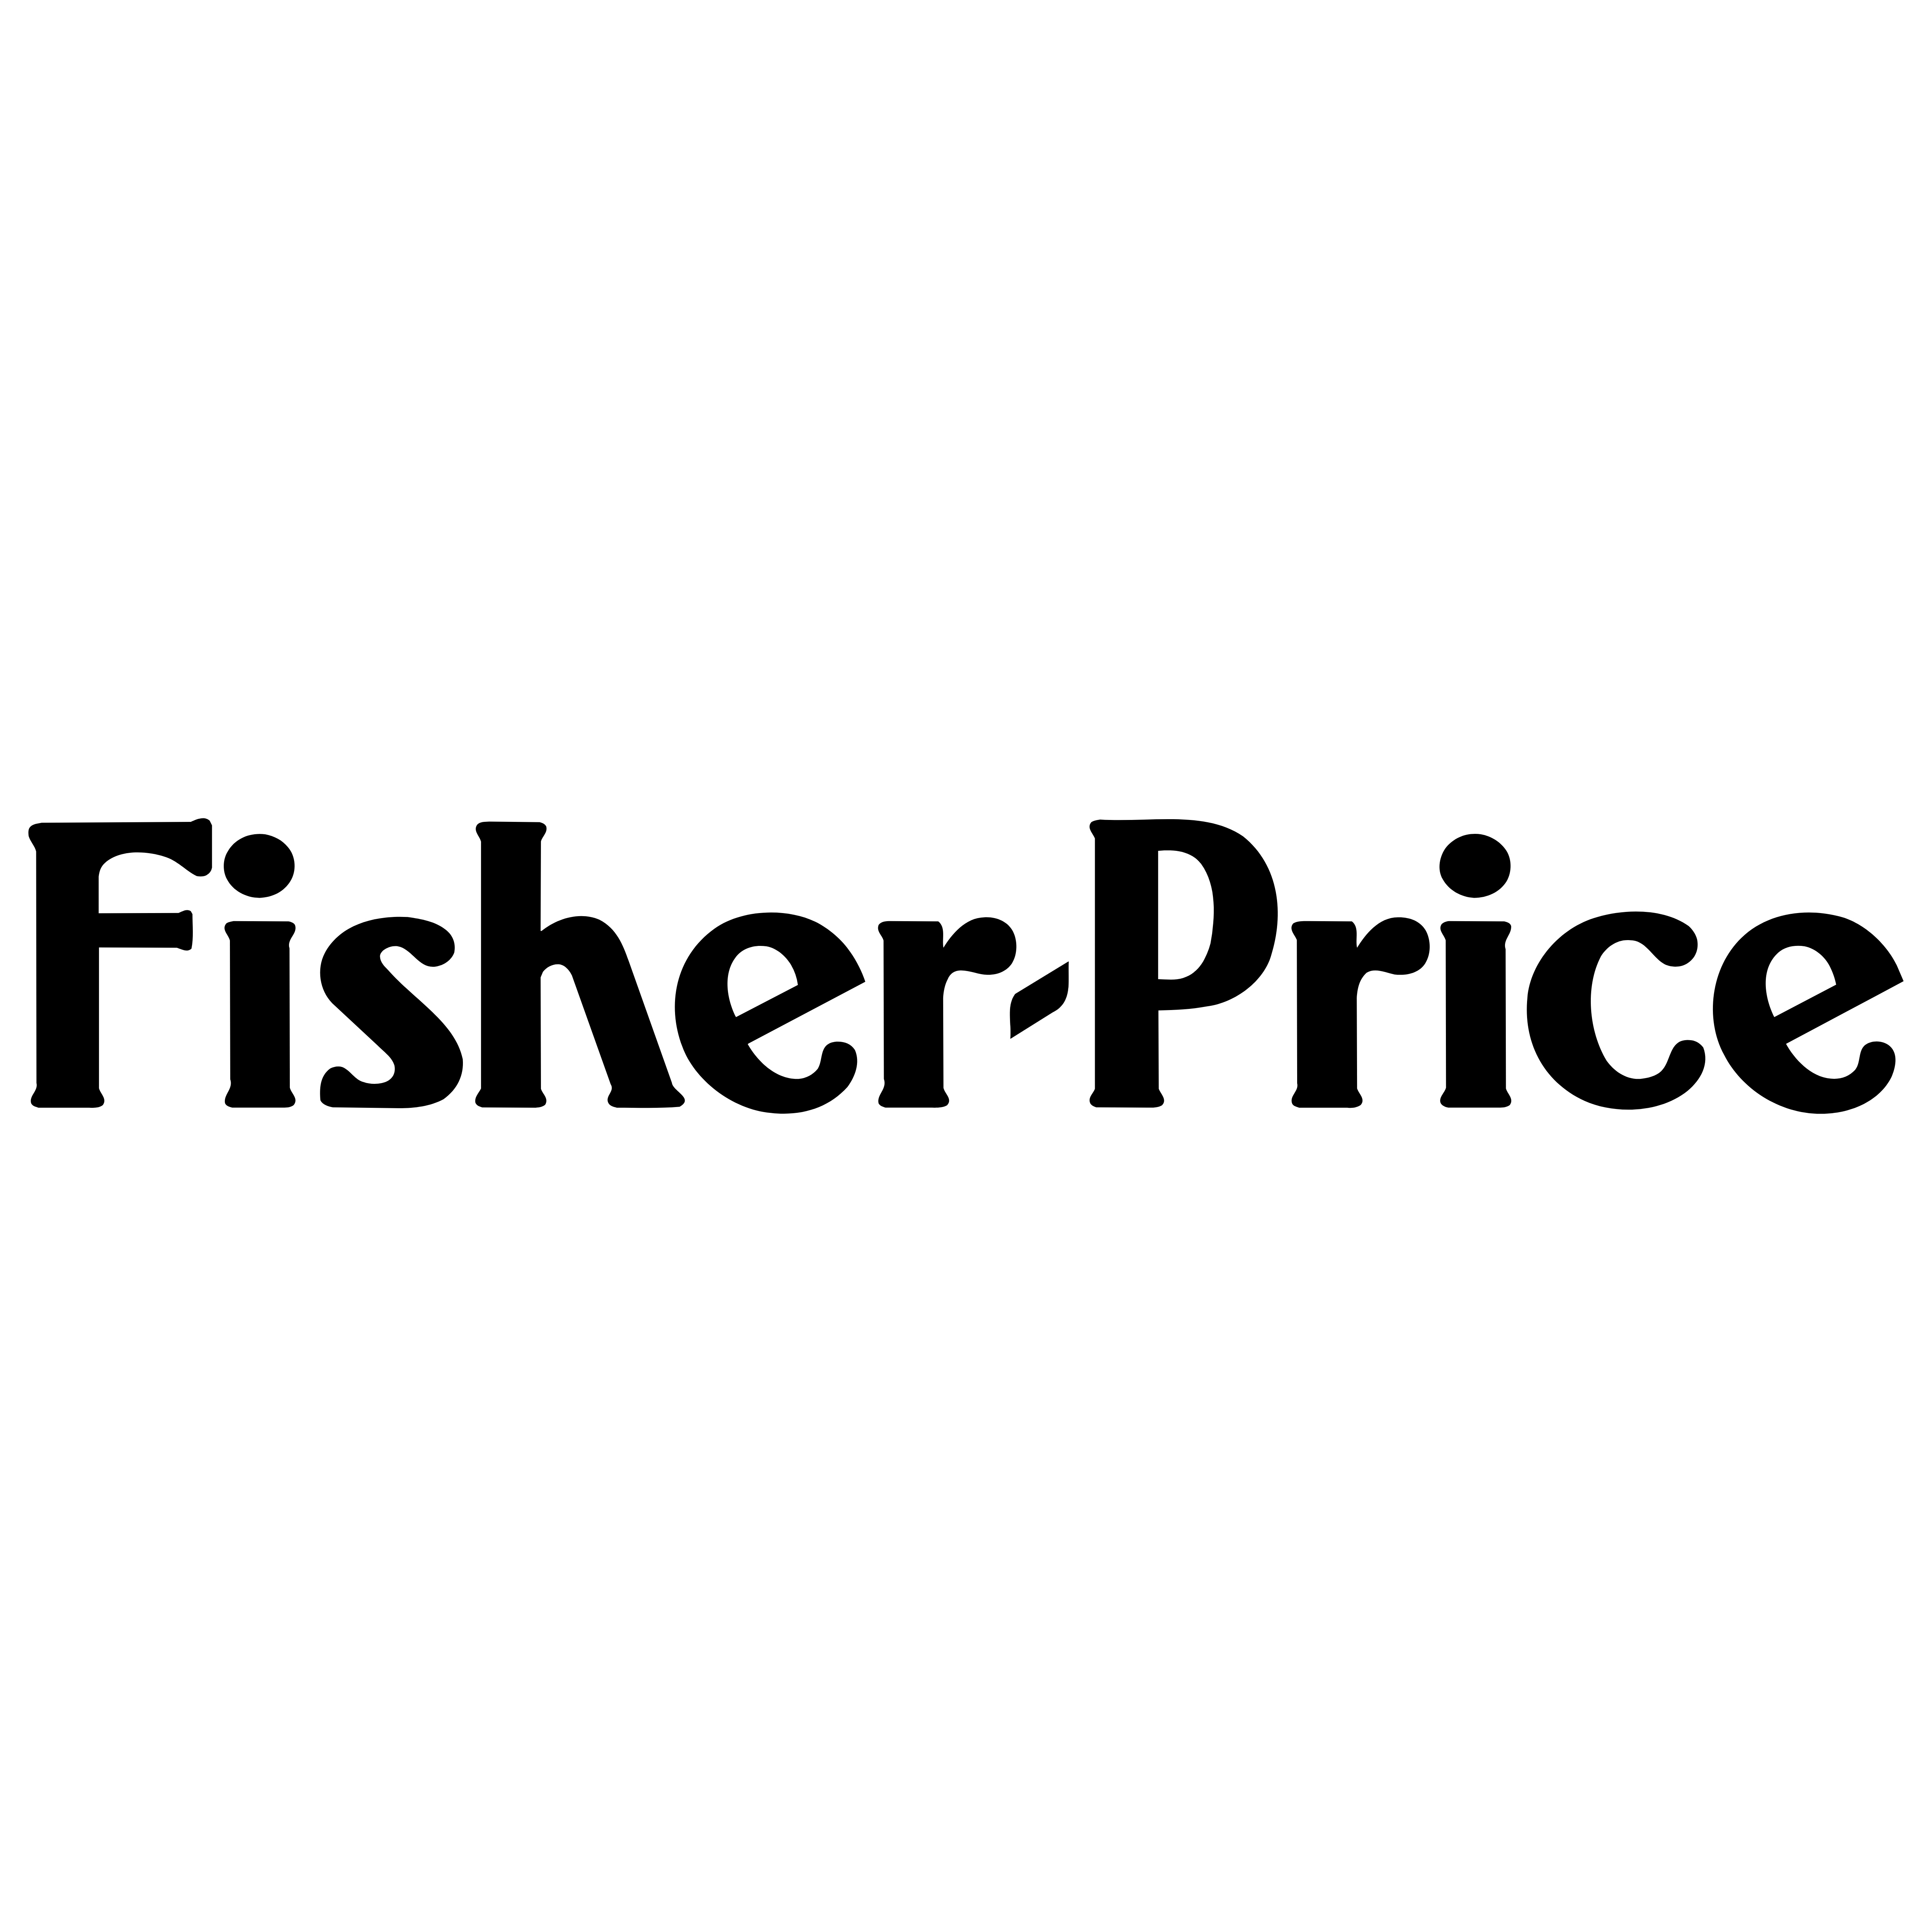 Fisher Price.